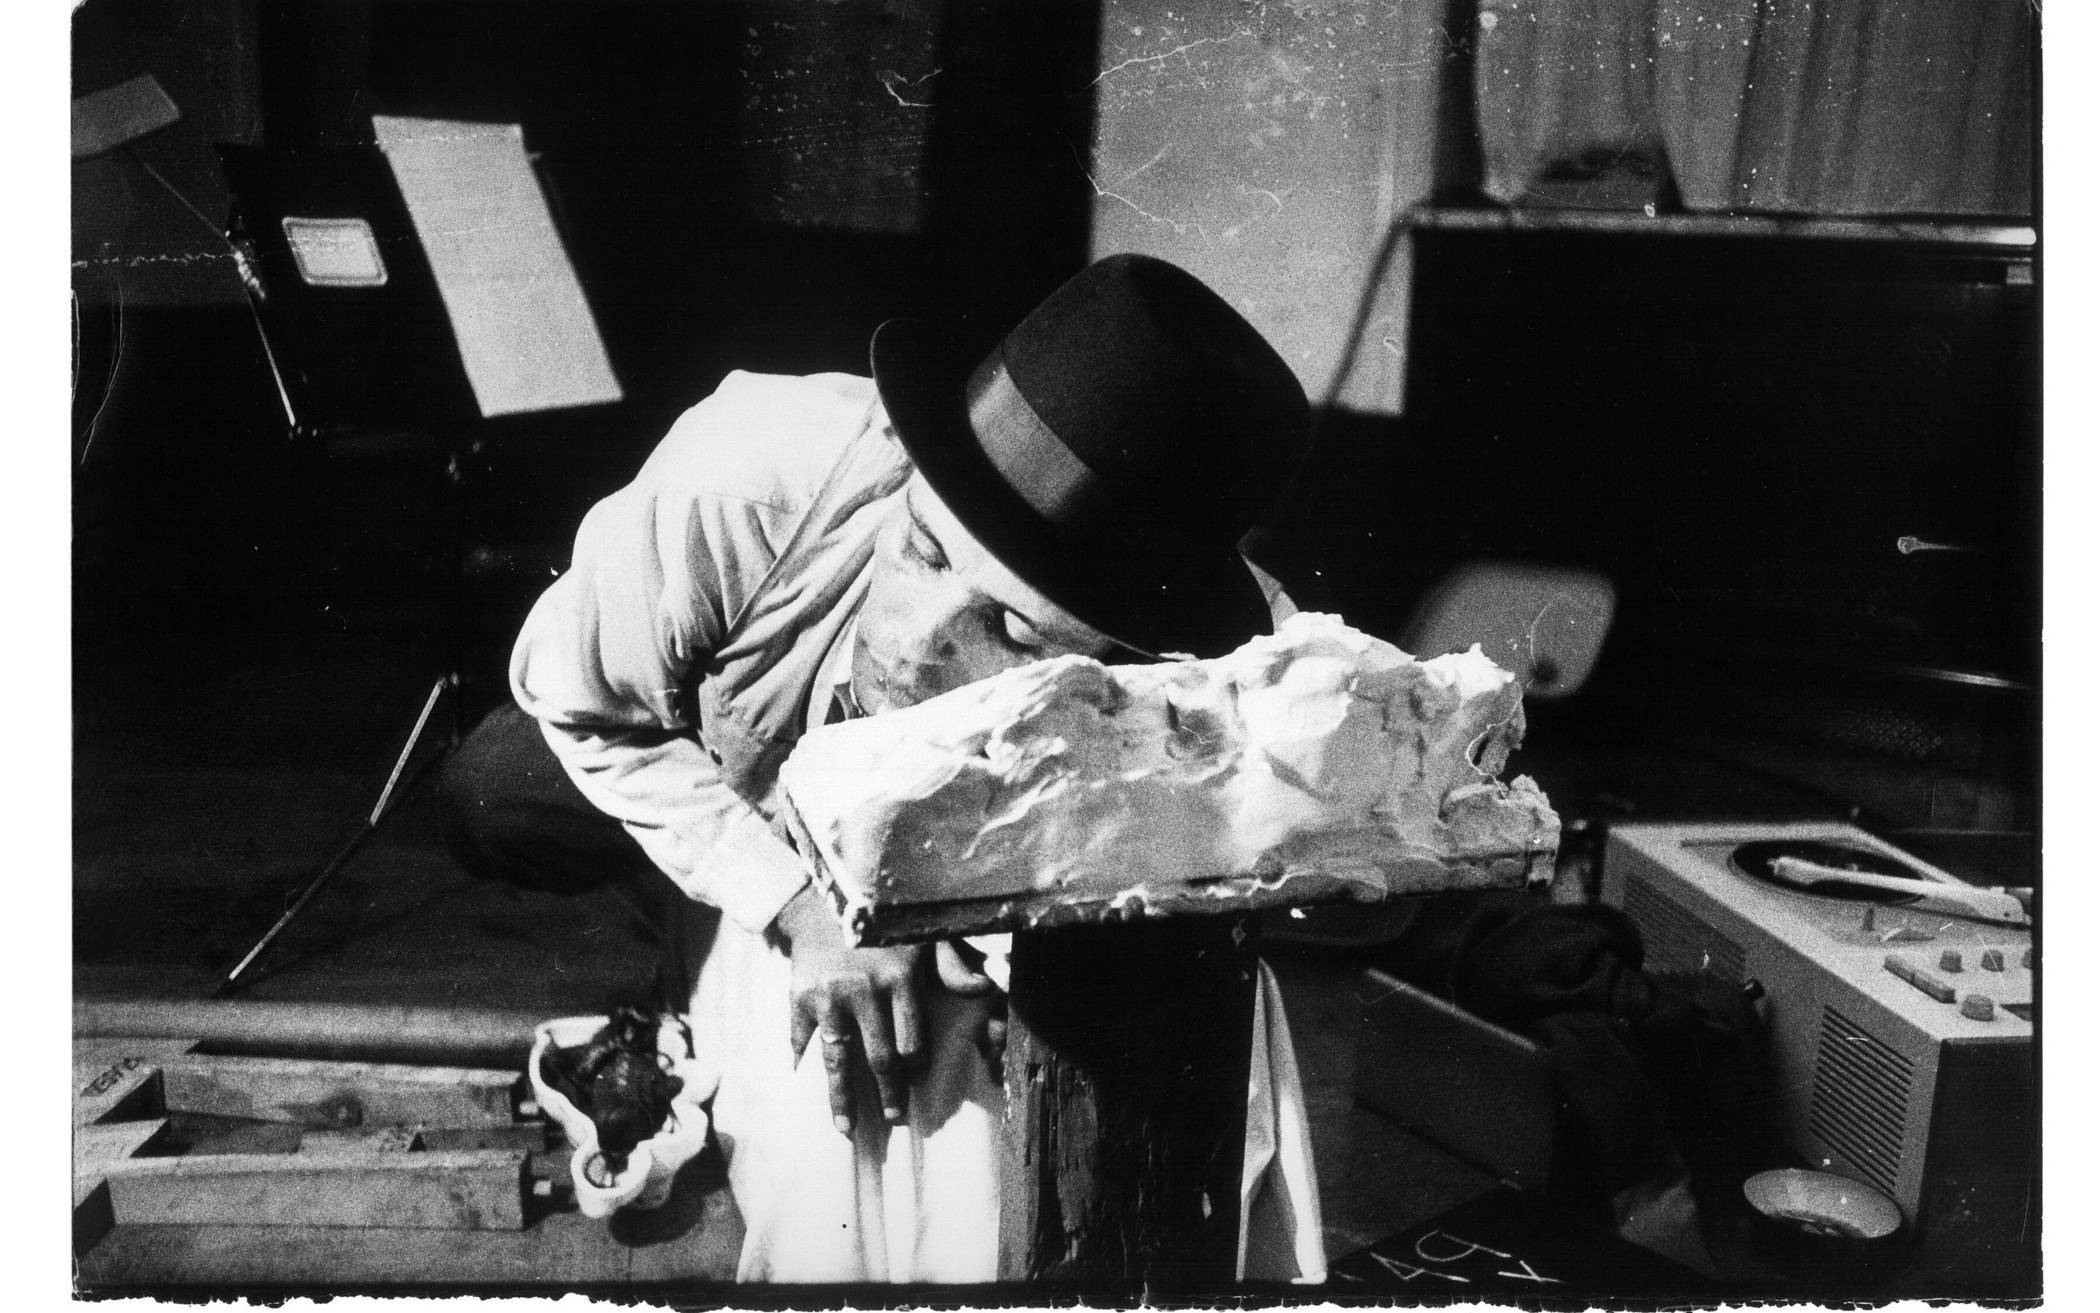  Joseph Beuys, „und in uns … unter uns … landunter“, 5. Juni 1965, 0-24 Uhr, Im Rahmen des Happenings 24 Stunden Galerie Parnass, Wuppertal, Moltkestraße 67. 